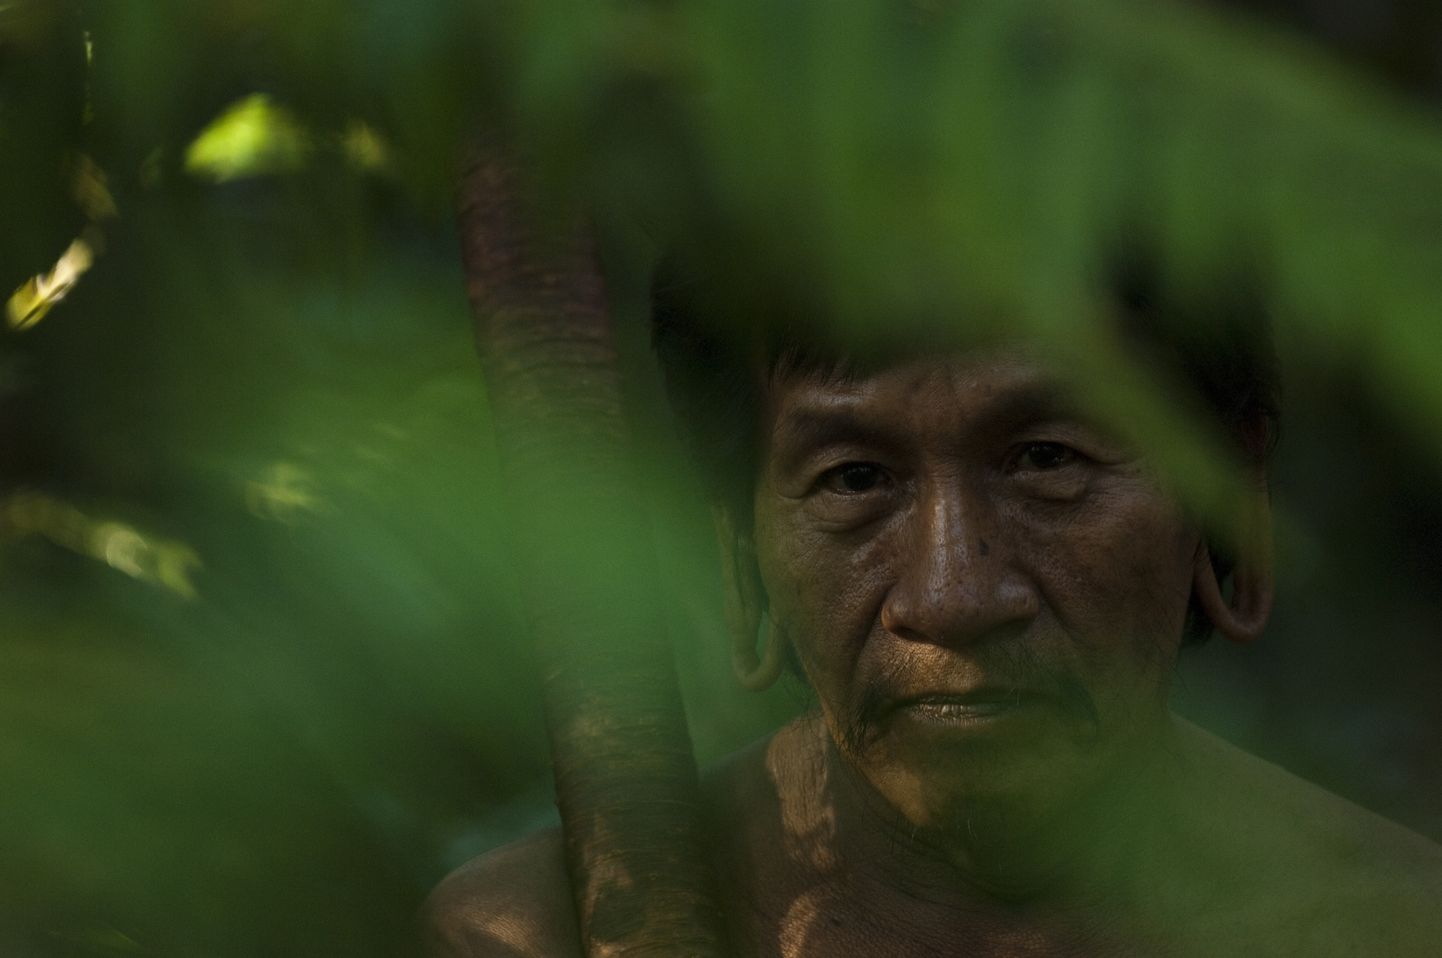 Amazonase põliselanik. Pilt on illustreeriv